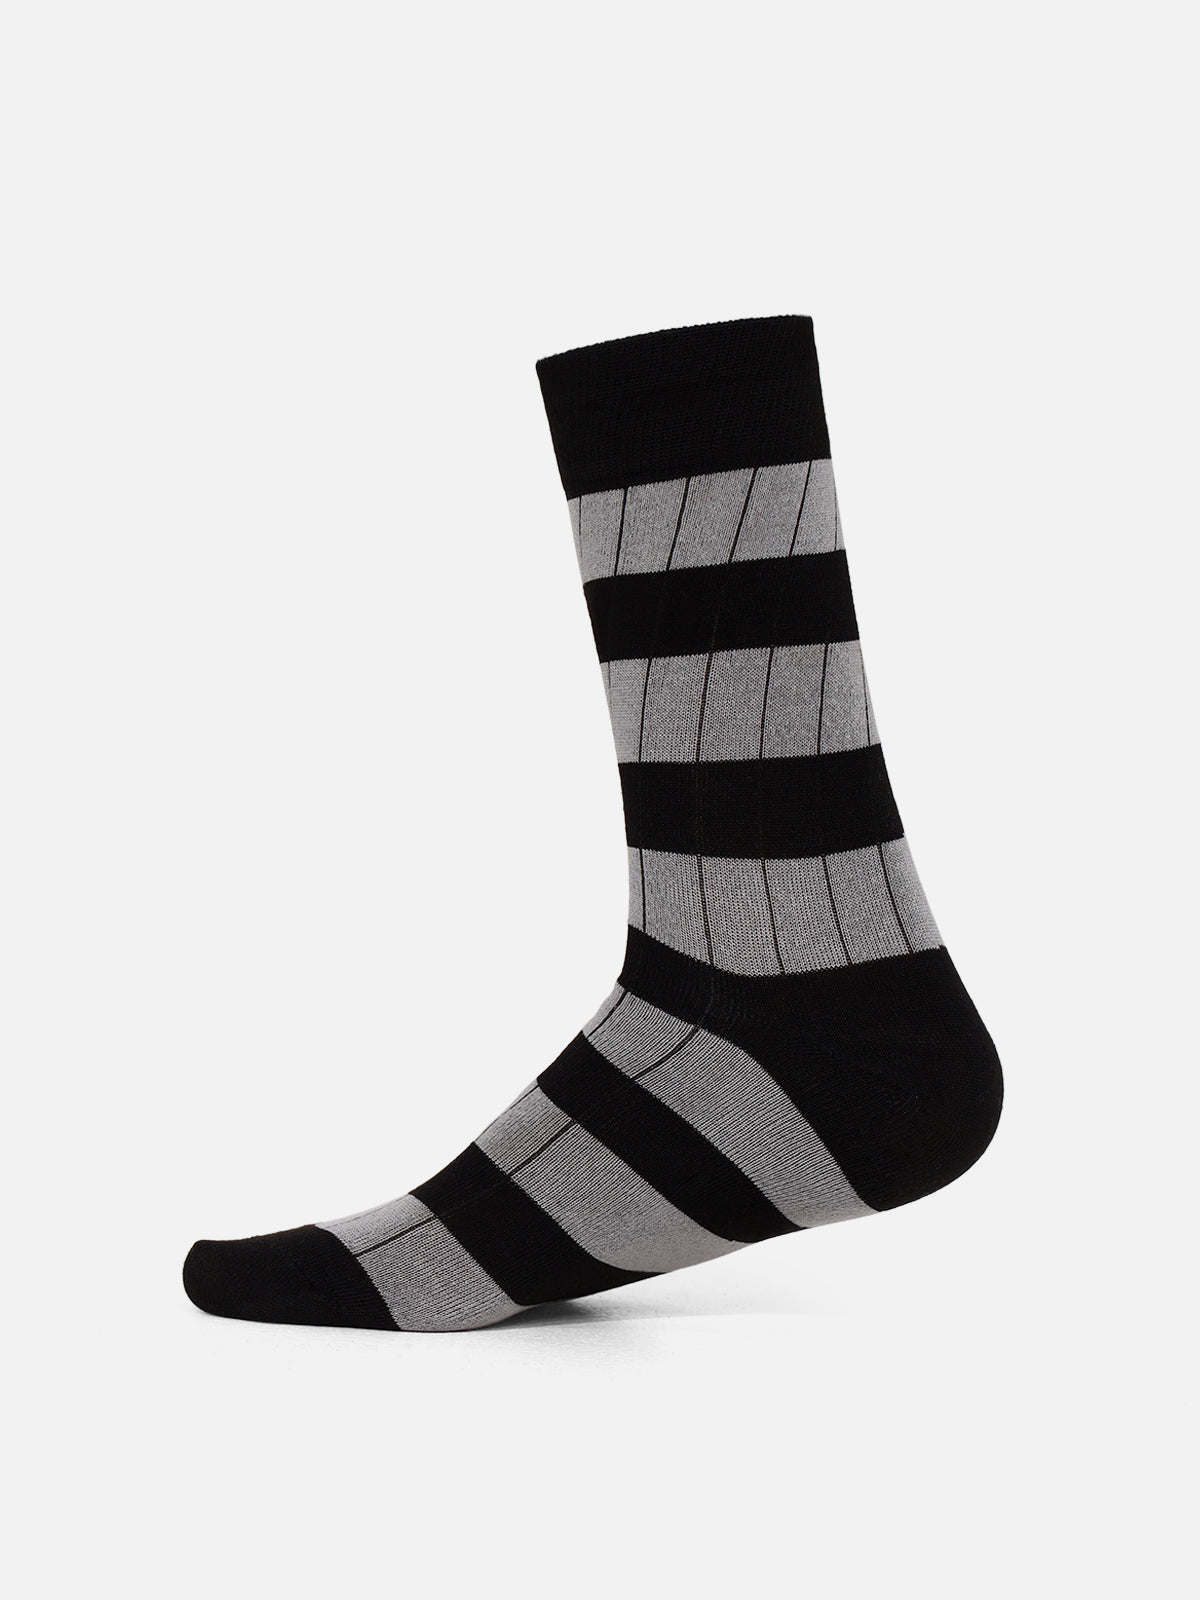 Black & White Crew Socks